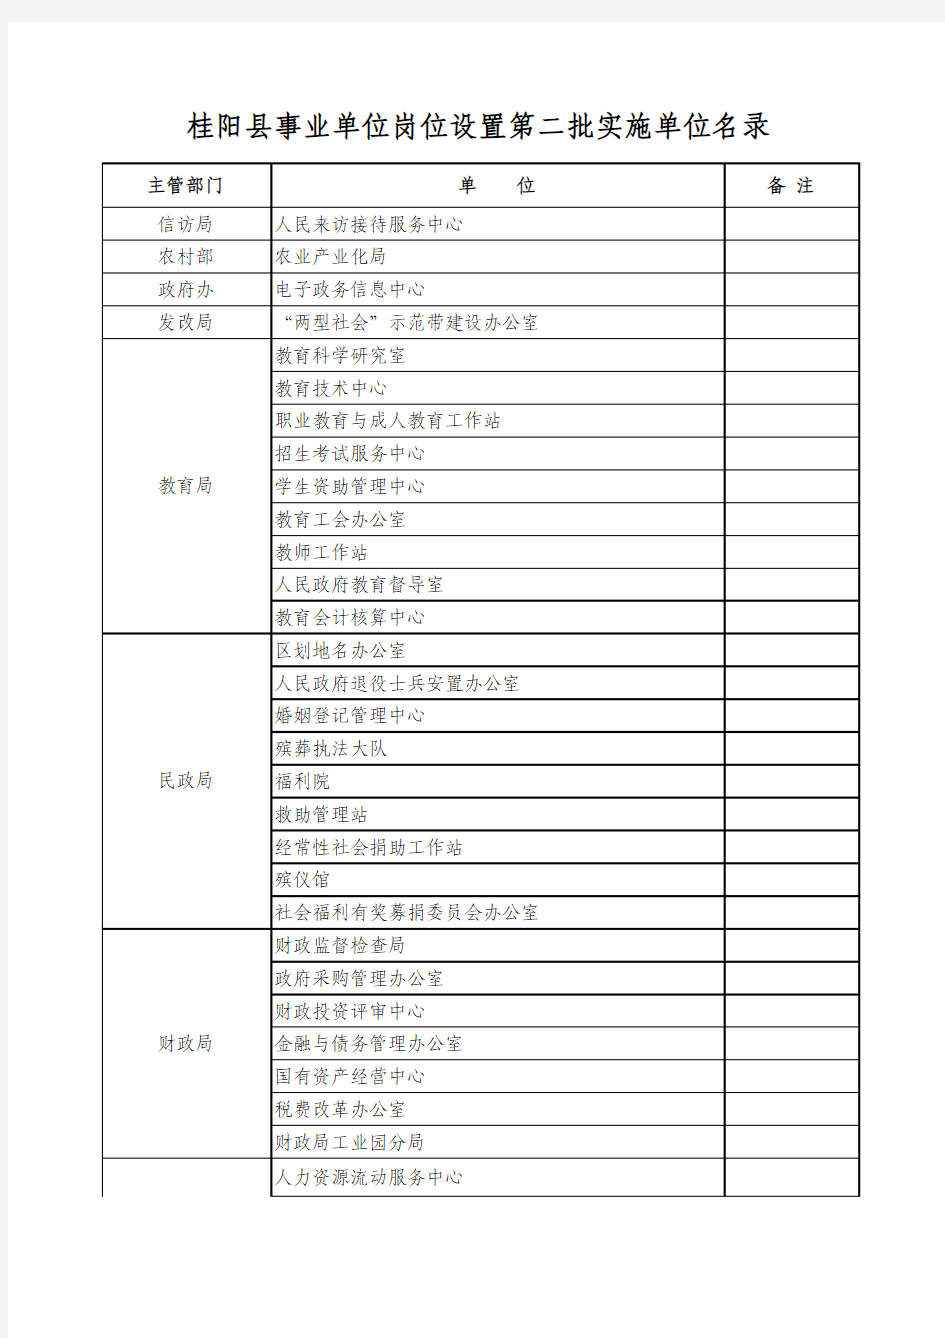 桂阳县第二批机关直属事业单位岗位设置情况表(附件)